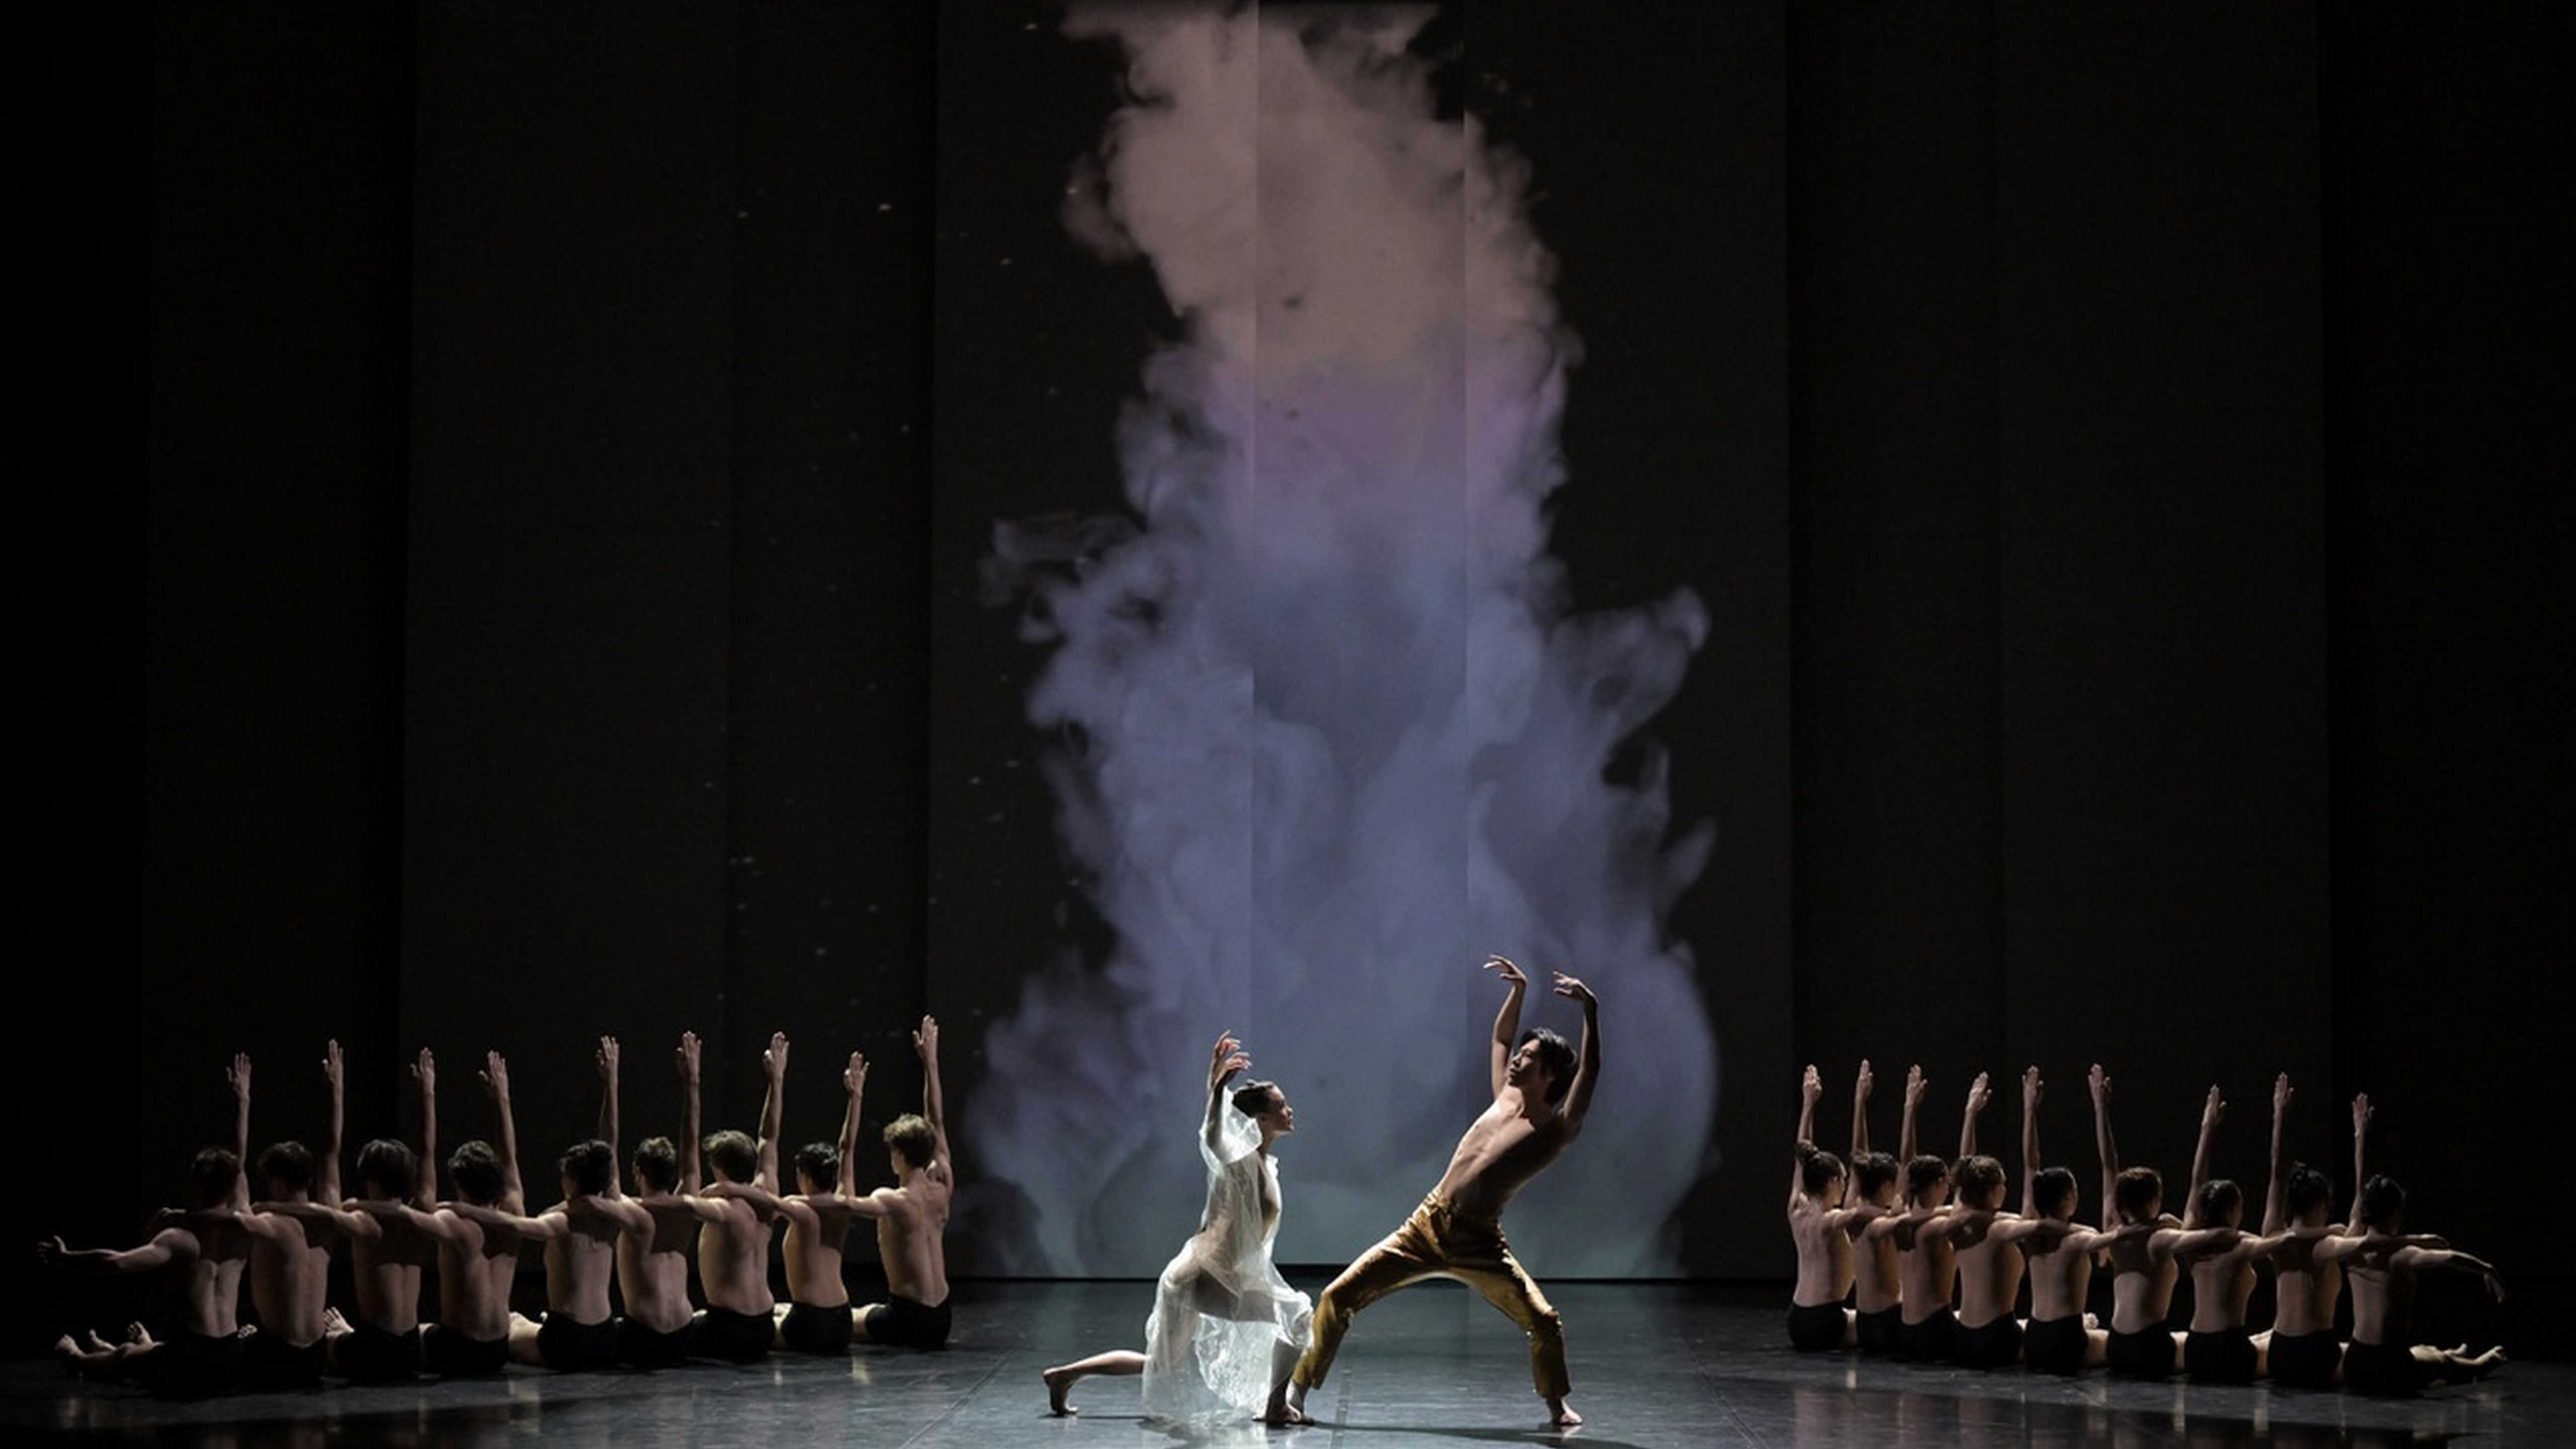 Danse : Angelin Preljocaj signe la chorégraphie du ballet "Mythologies" pour l’Opéra de Bordeaux, sur une musique de Thomas Bangalter 